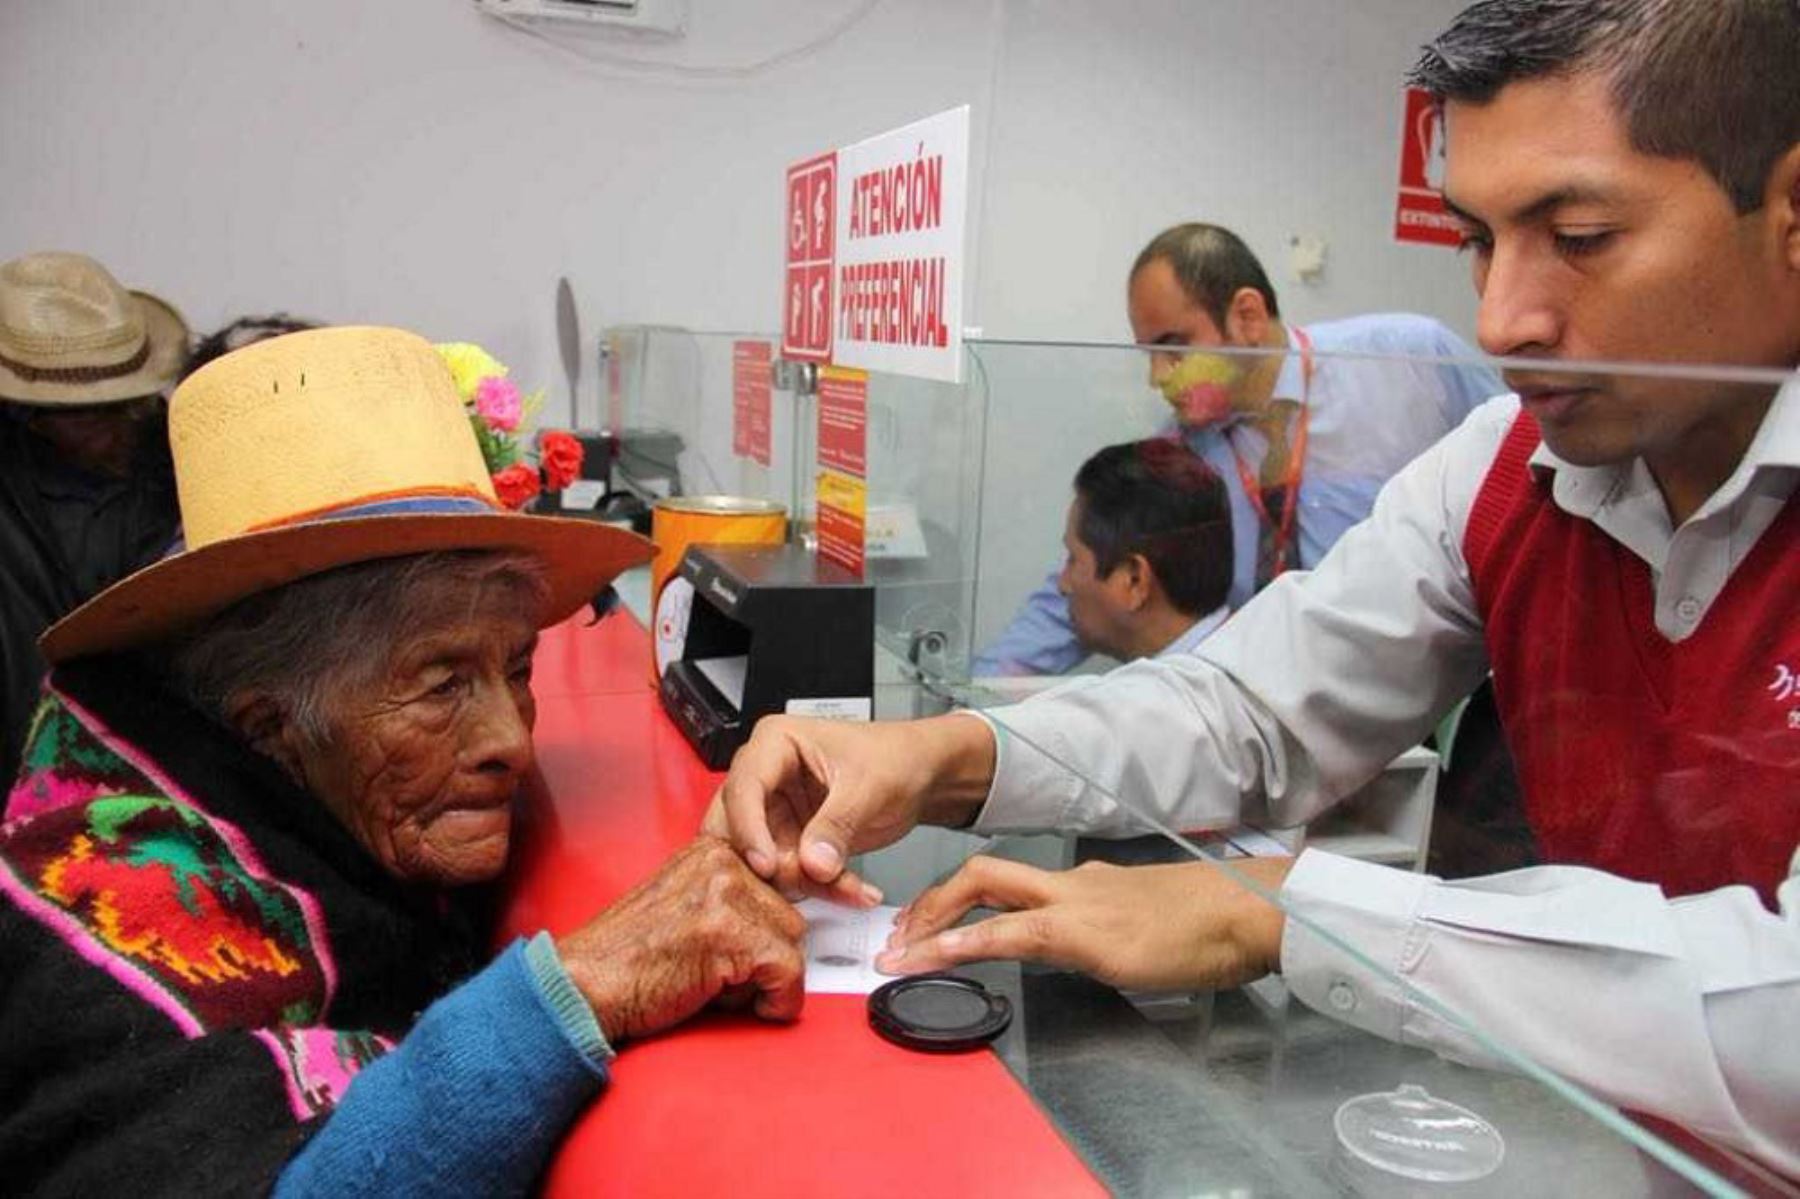 La región de Cajamarca registra la mayor cantidad de afiliados al Programa Pensión 65 del Ministerio de Desarrollo e Inclusión Social, en todo el país, con 61,777 usuarias y usuarios, con el propósito de mejorar su calidad de vida y acortar las brechas de desigualdad y pobreza.